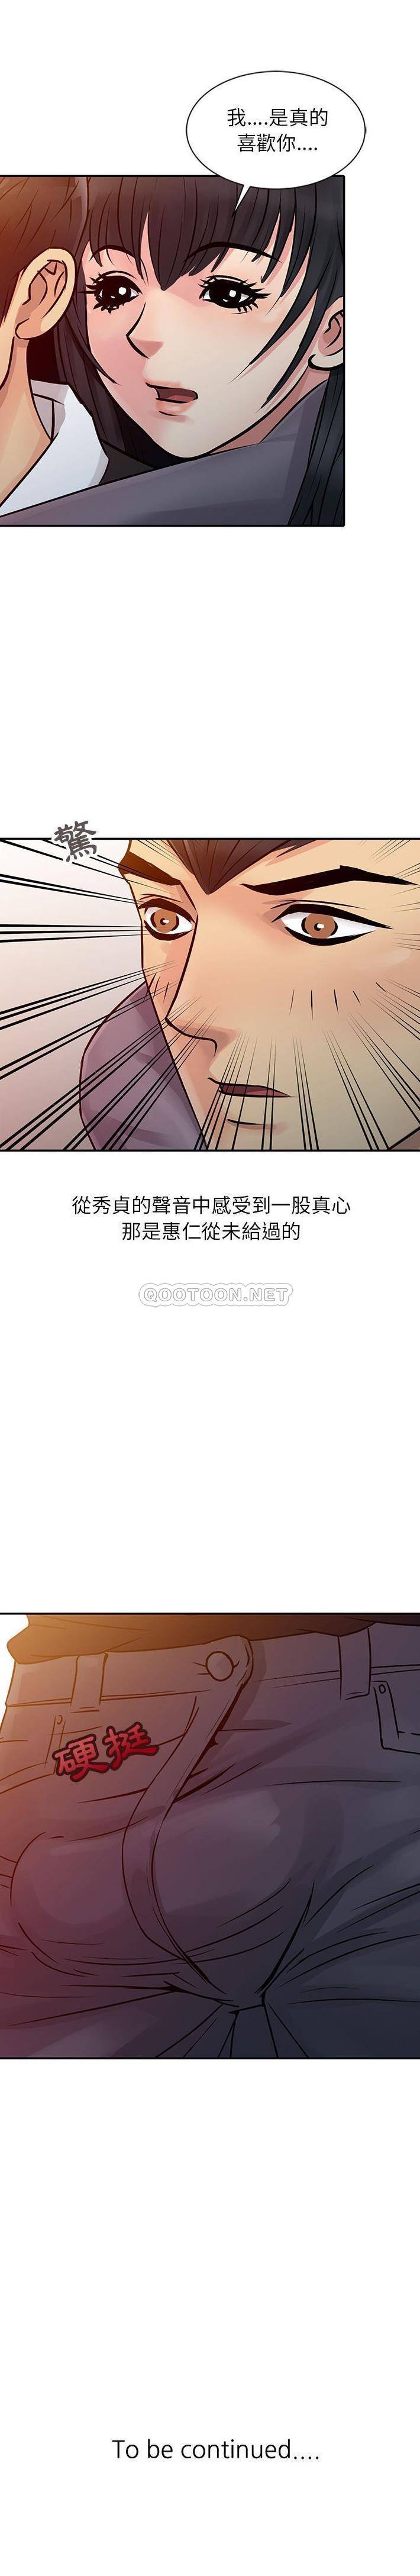 韩国污漫画 征服的滋味 第11话 16